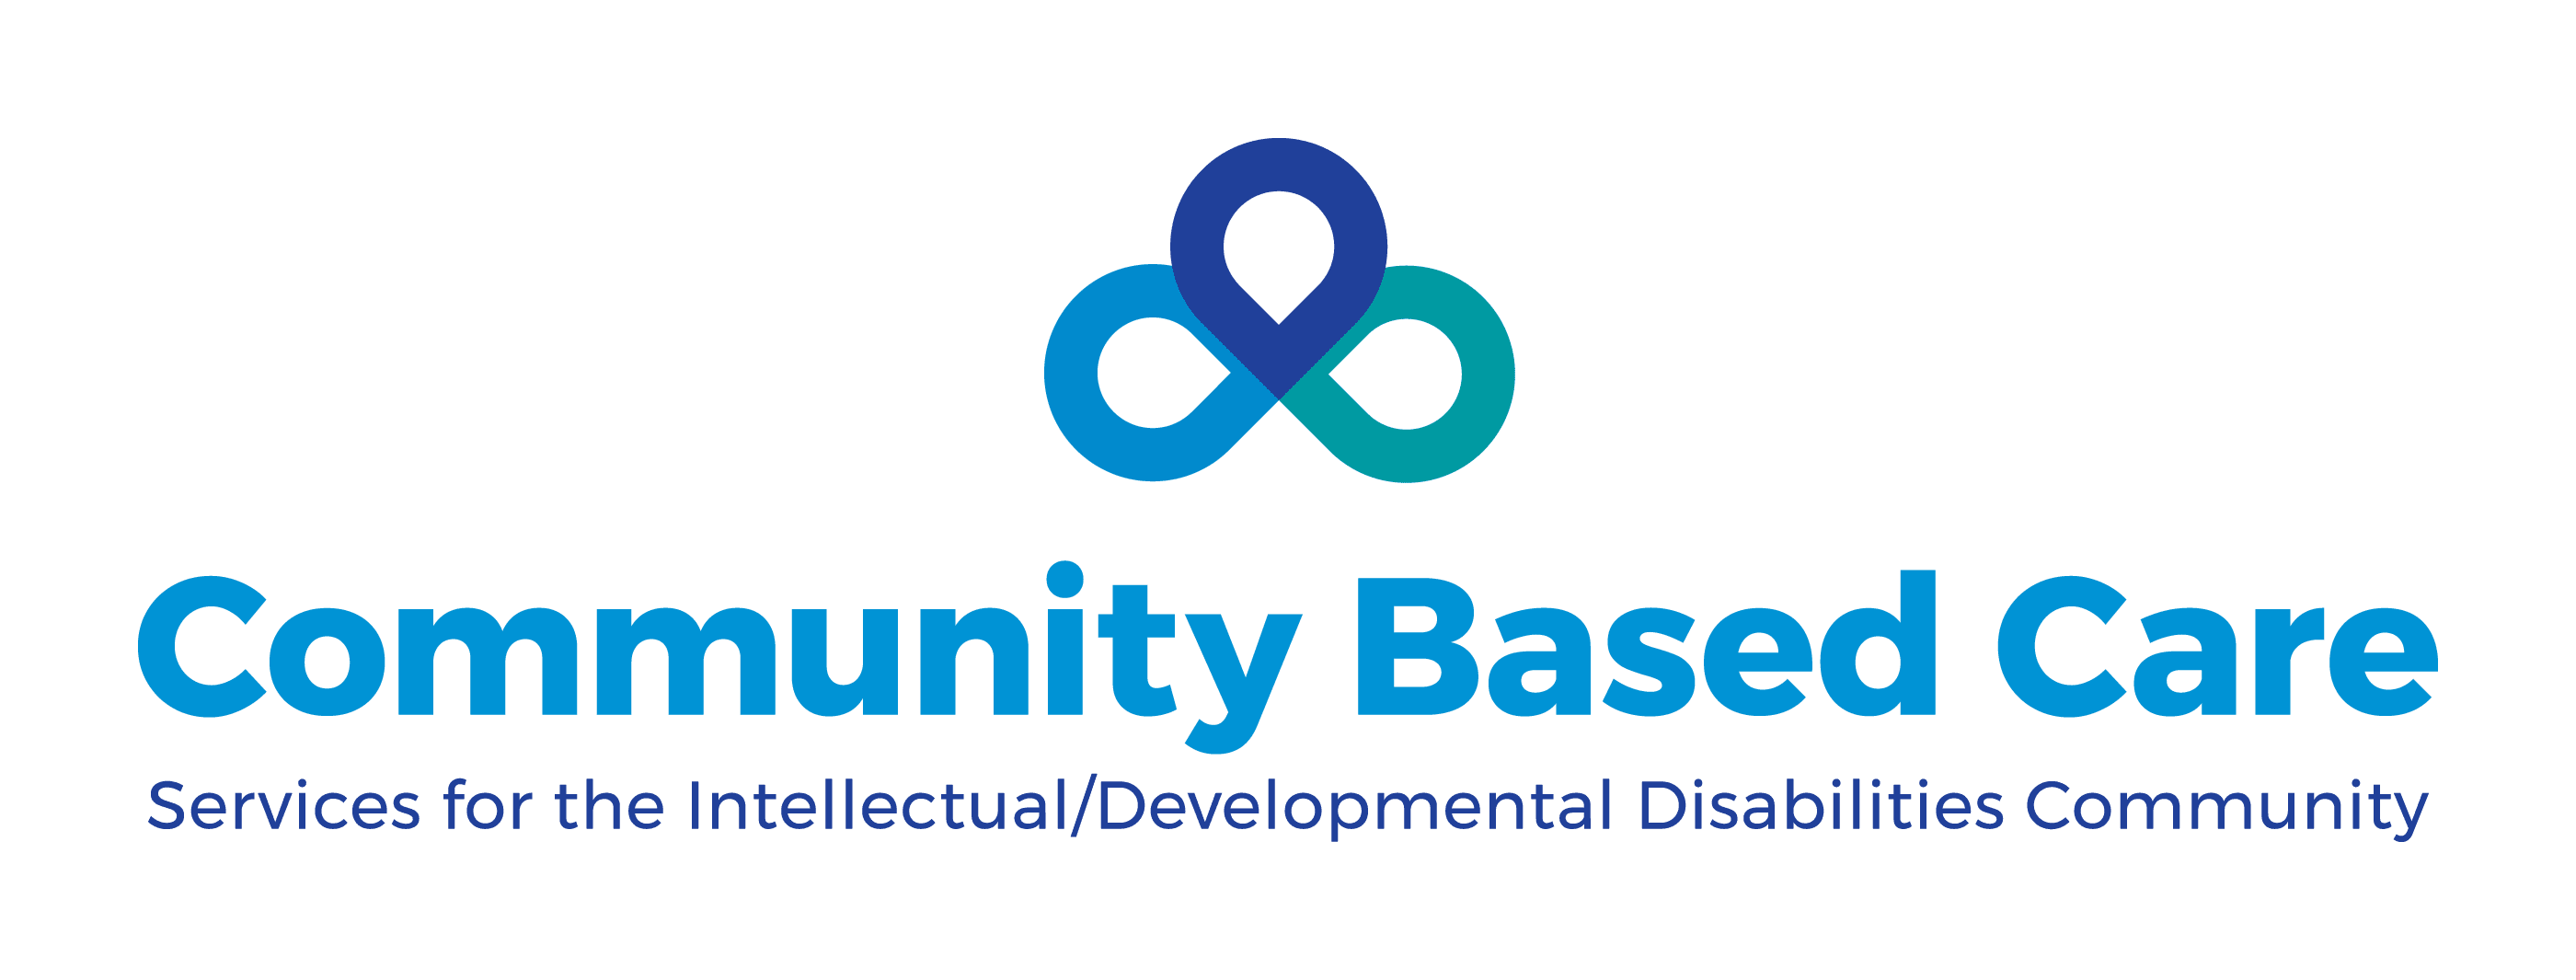 Community Based Care Logo